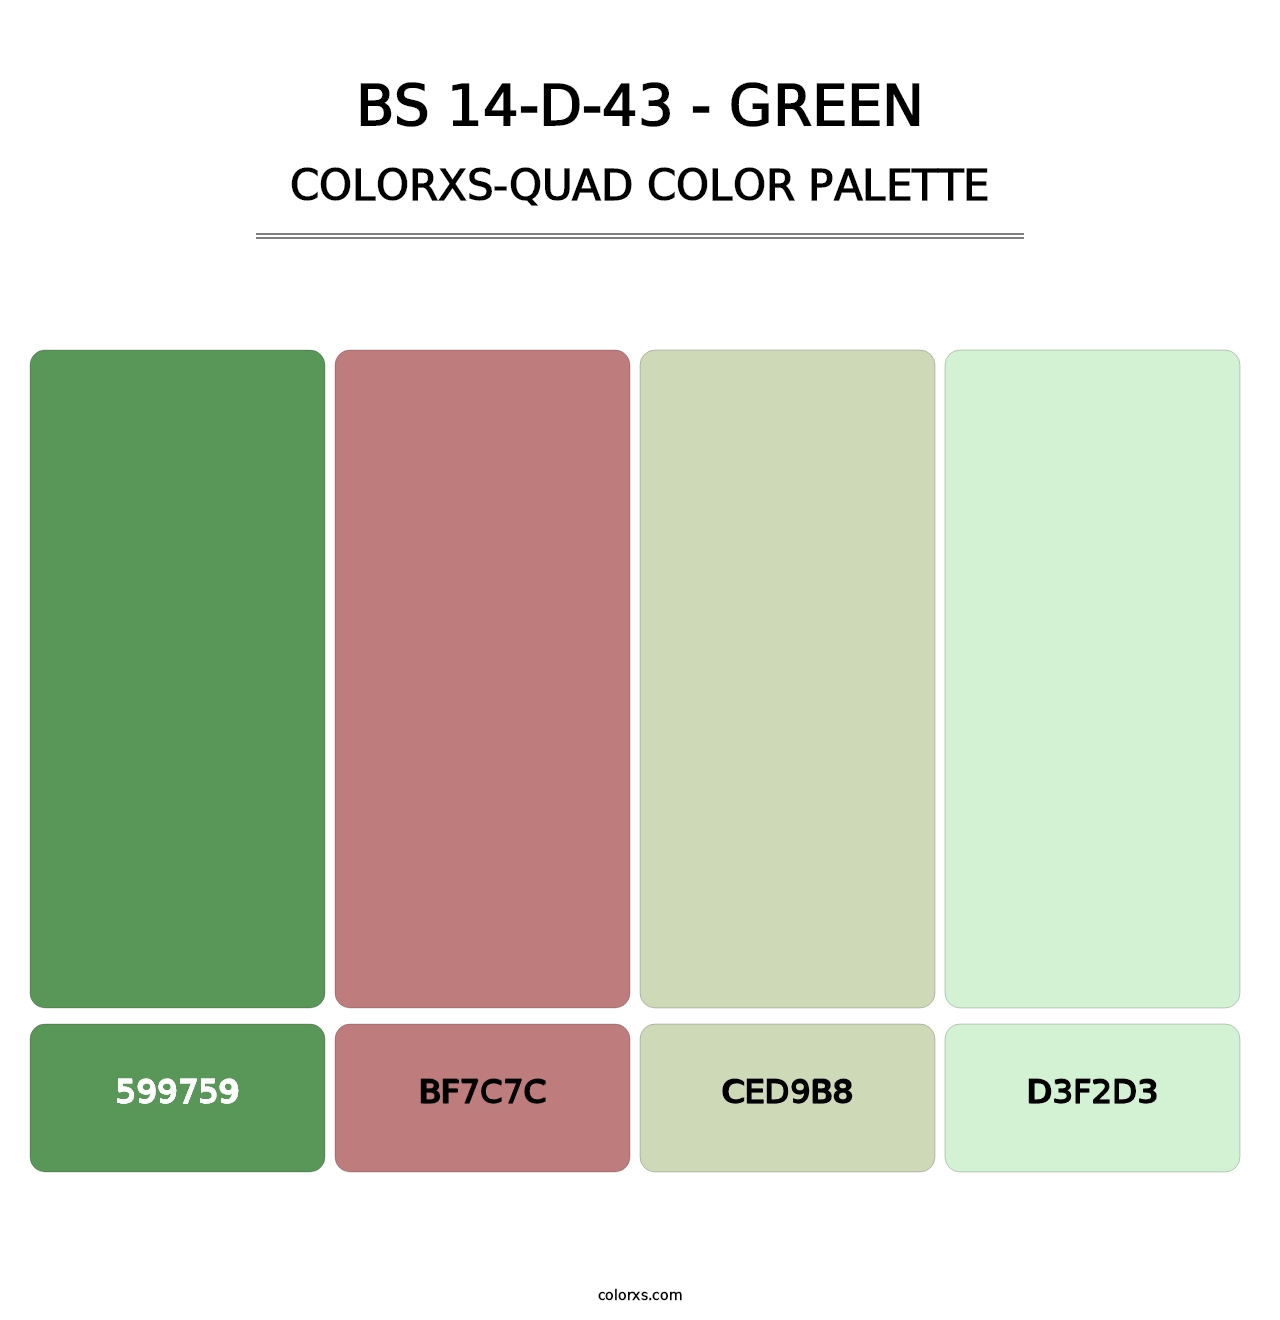 BS 14-D-43 - Green - Colorxs Quad Palette